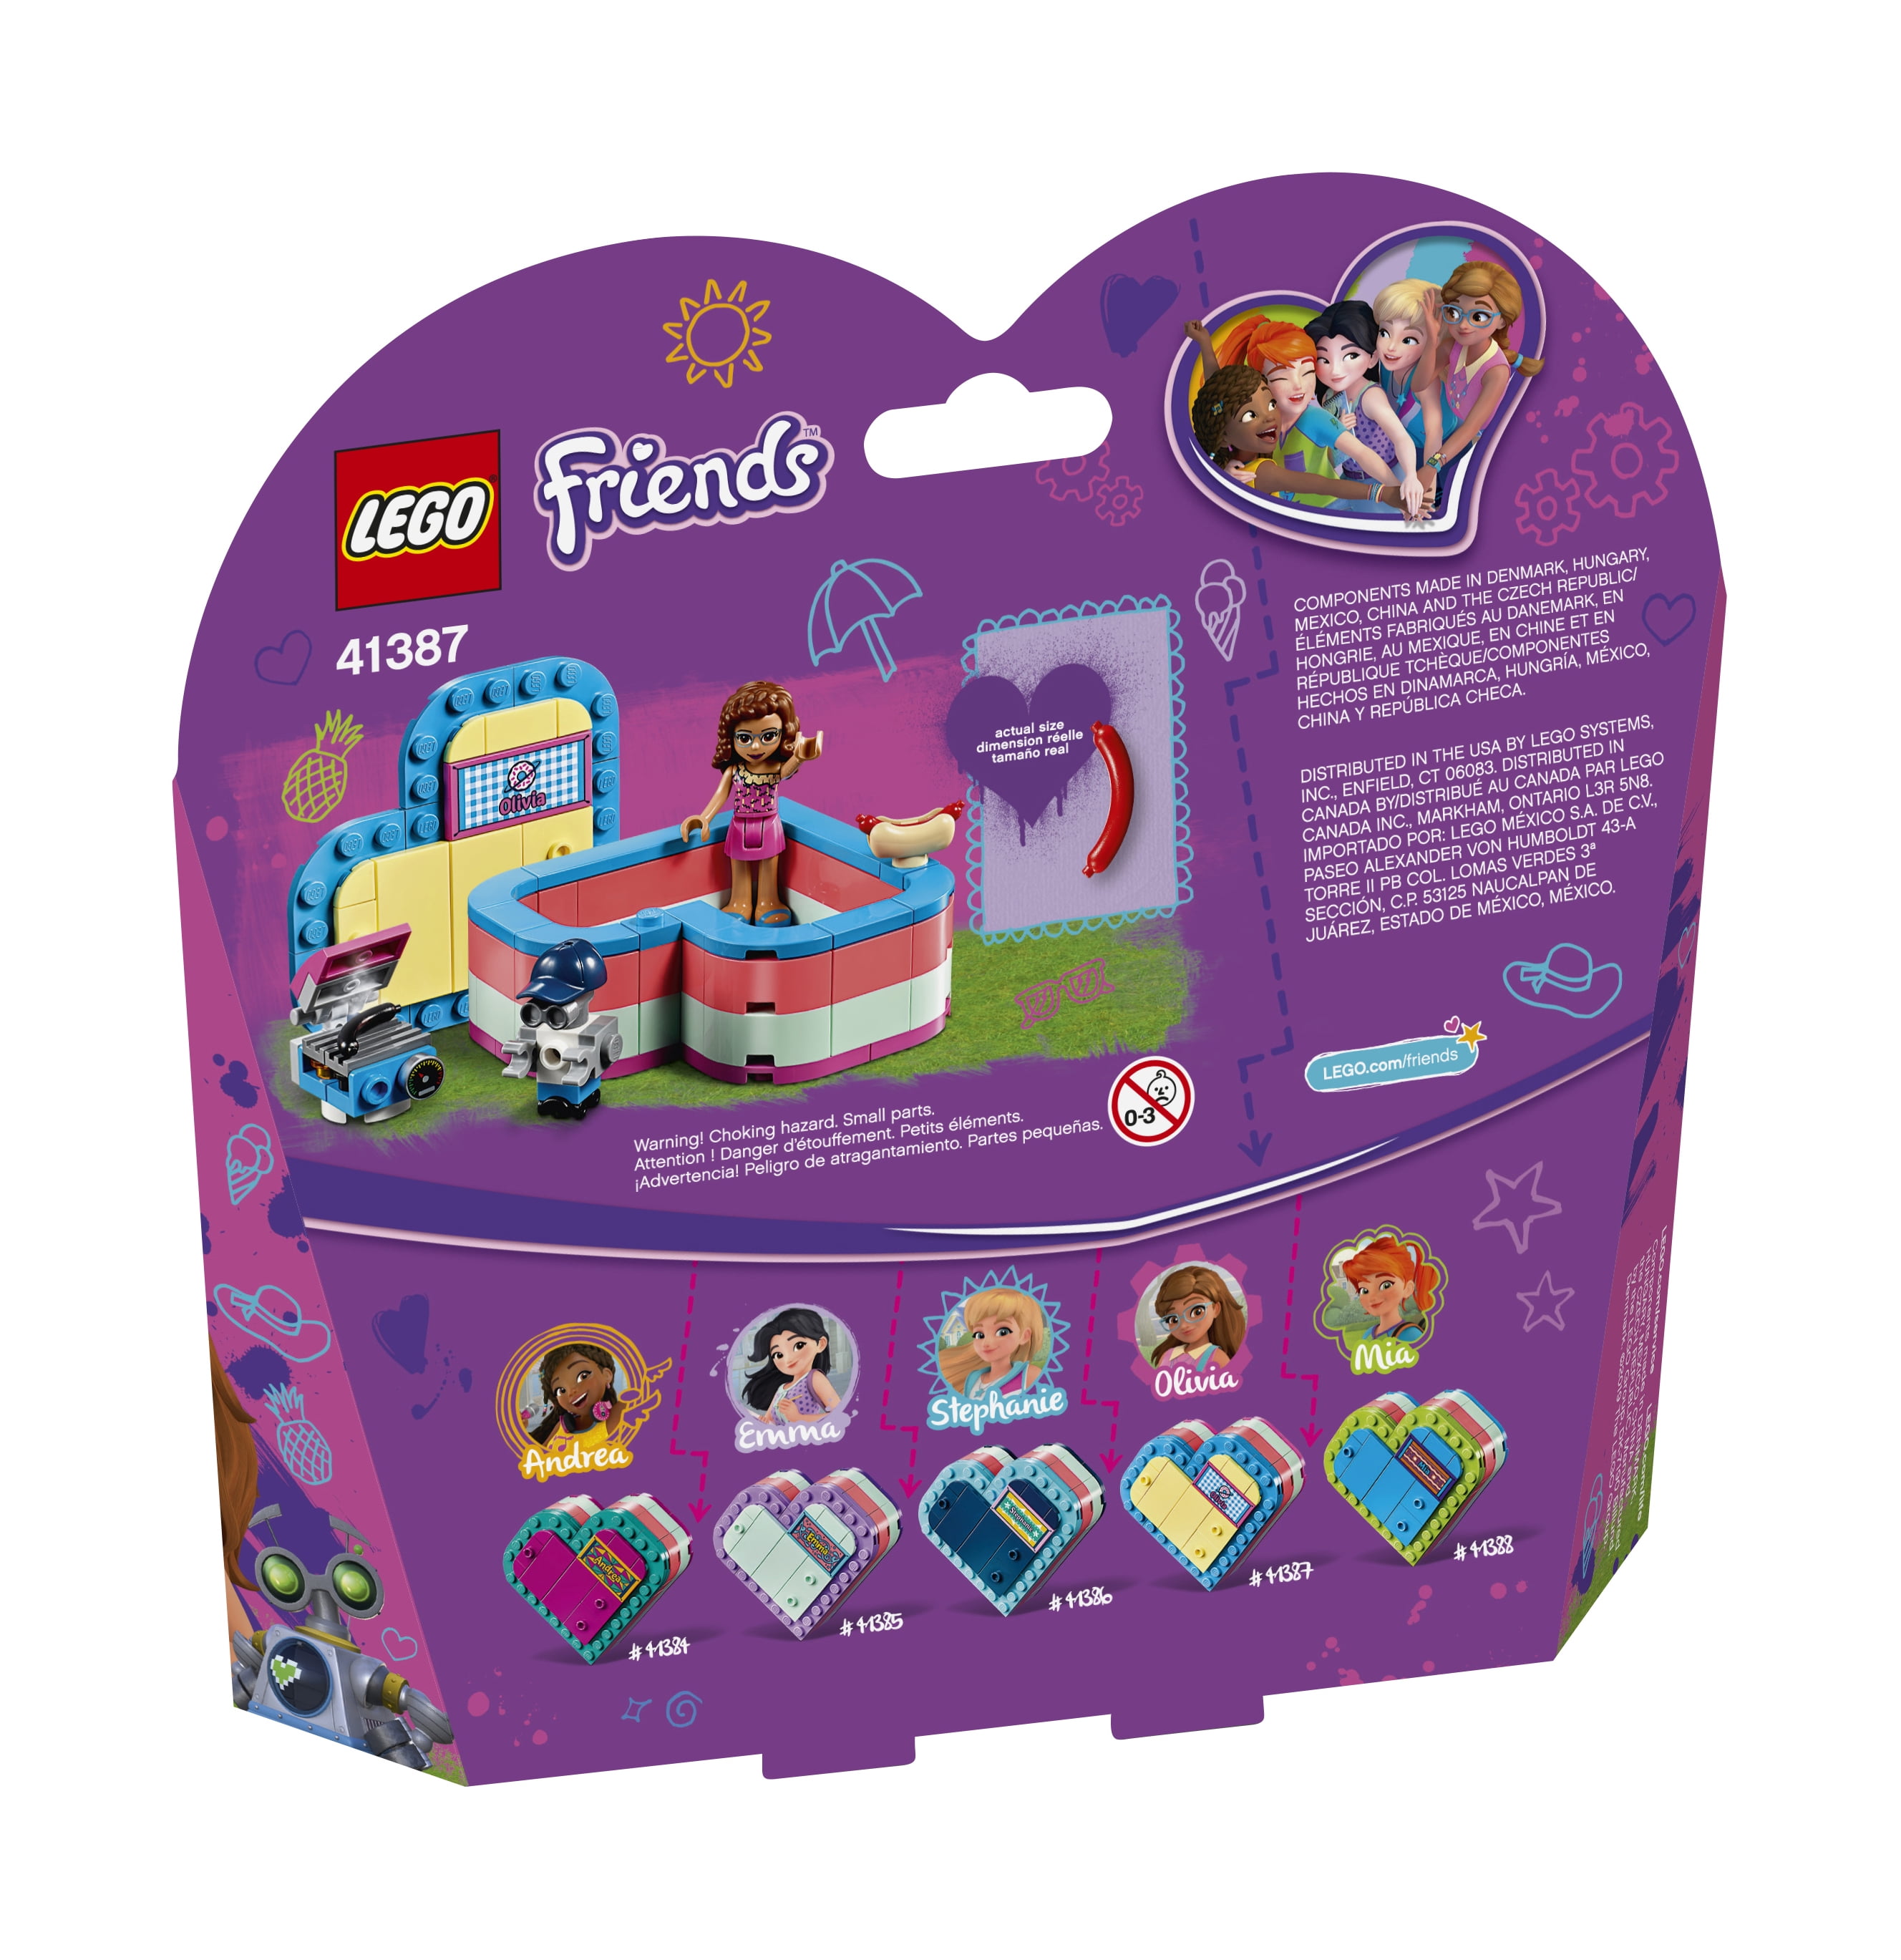 Lot of 3 LEGO Friends - Storage Box, Olivia's Lab & Stephanie's Cakes -  Sealed